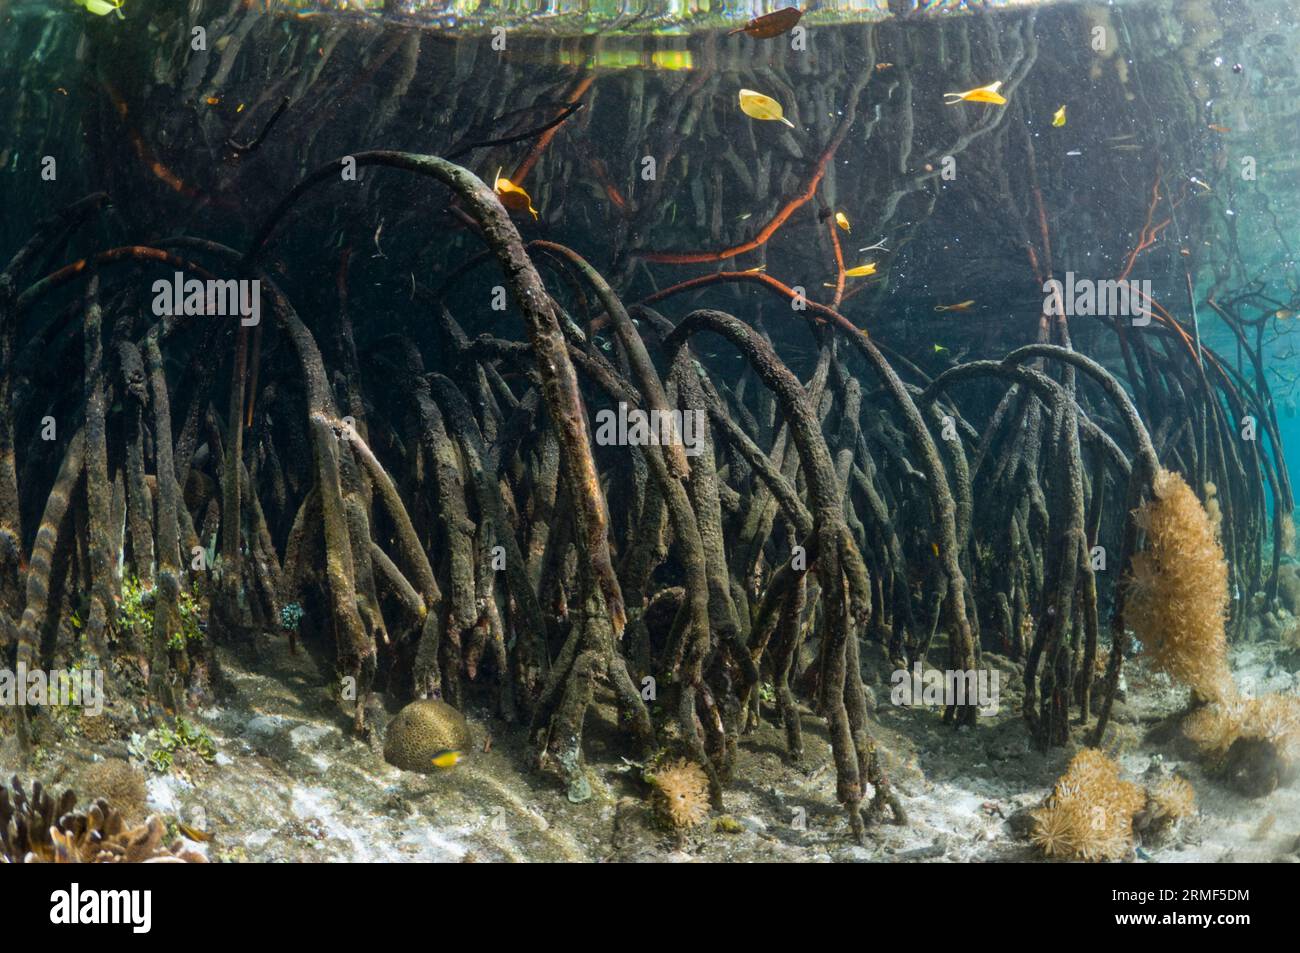 Manglar (Rhizophora sp.) en el borde del arrecife de coral. Invertebrados que crecen debajo y en las raíces. Raja Ampat, Indonesia. Foto de stock